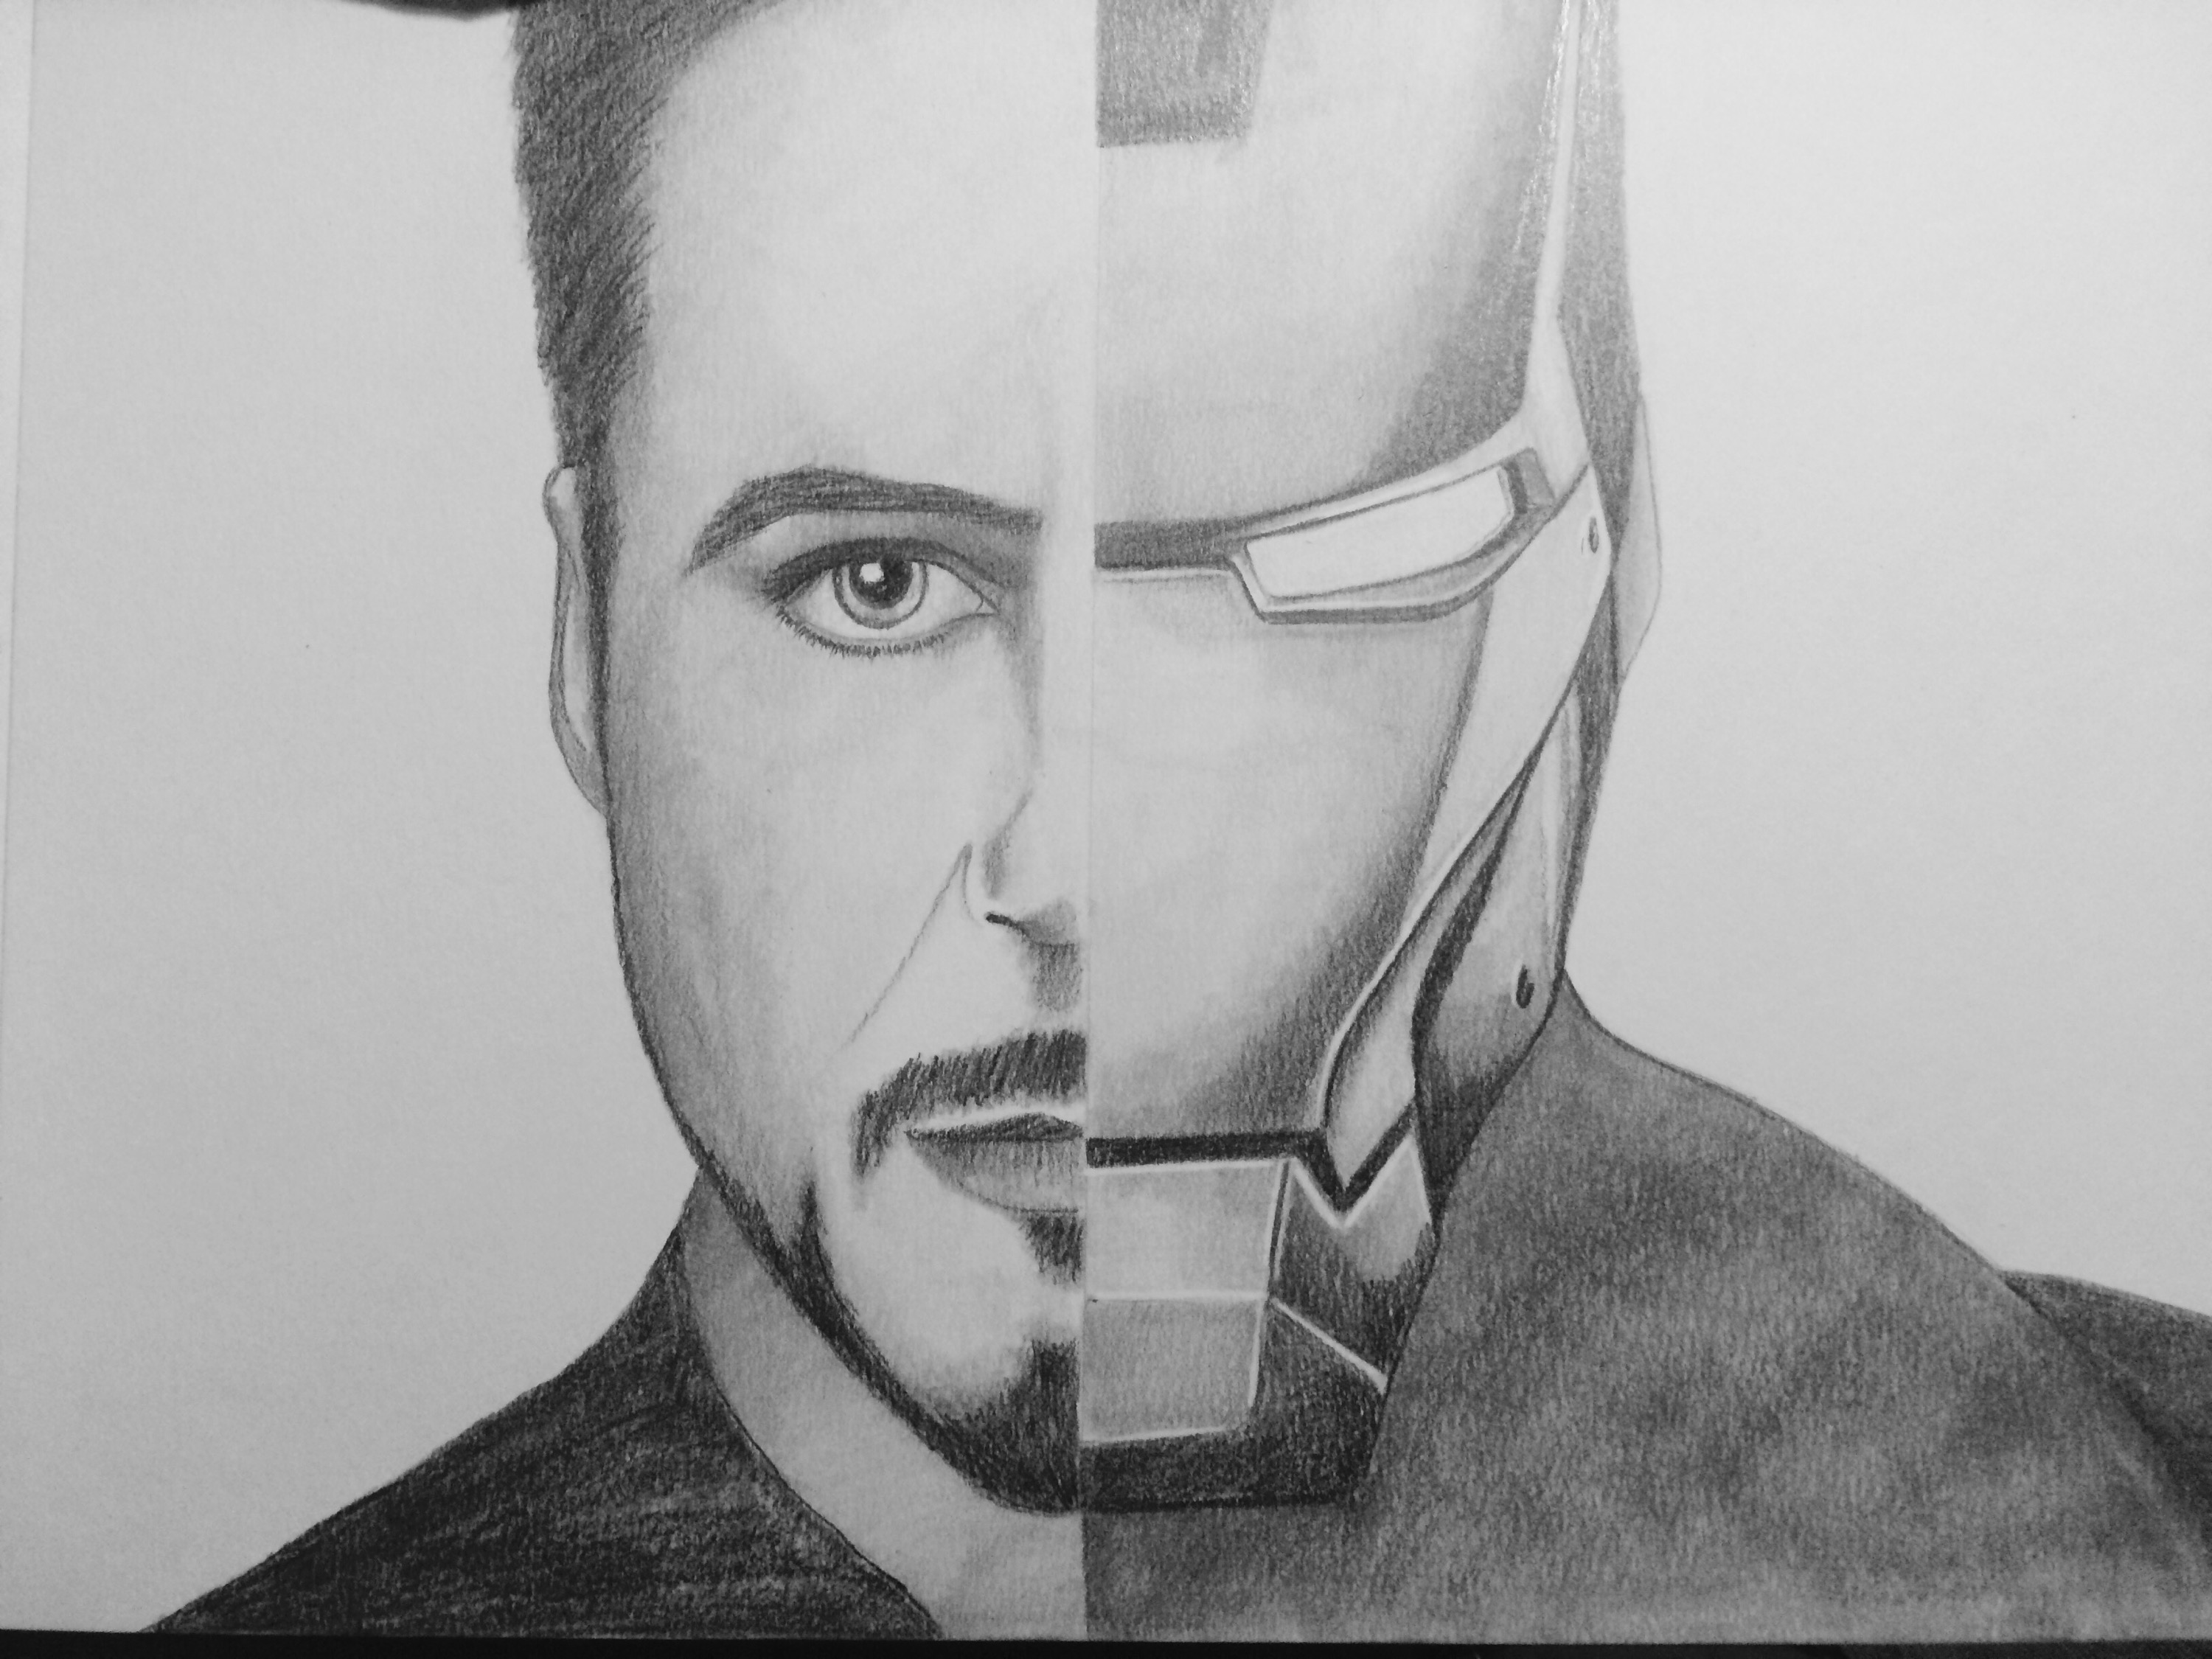 Tony Starkiron Man Kellyhortonfineart - Tony Stark Drawing. 